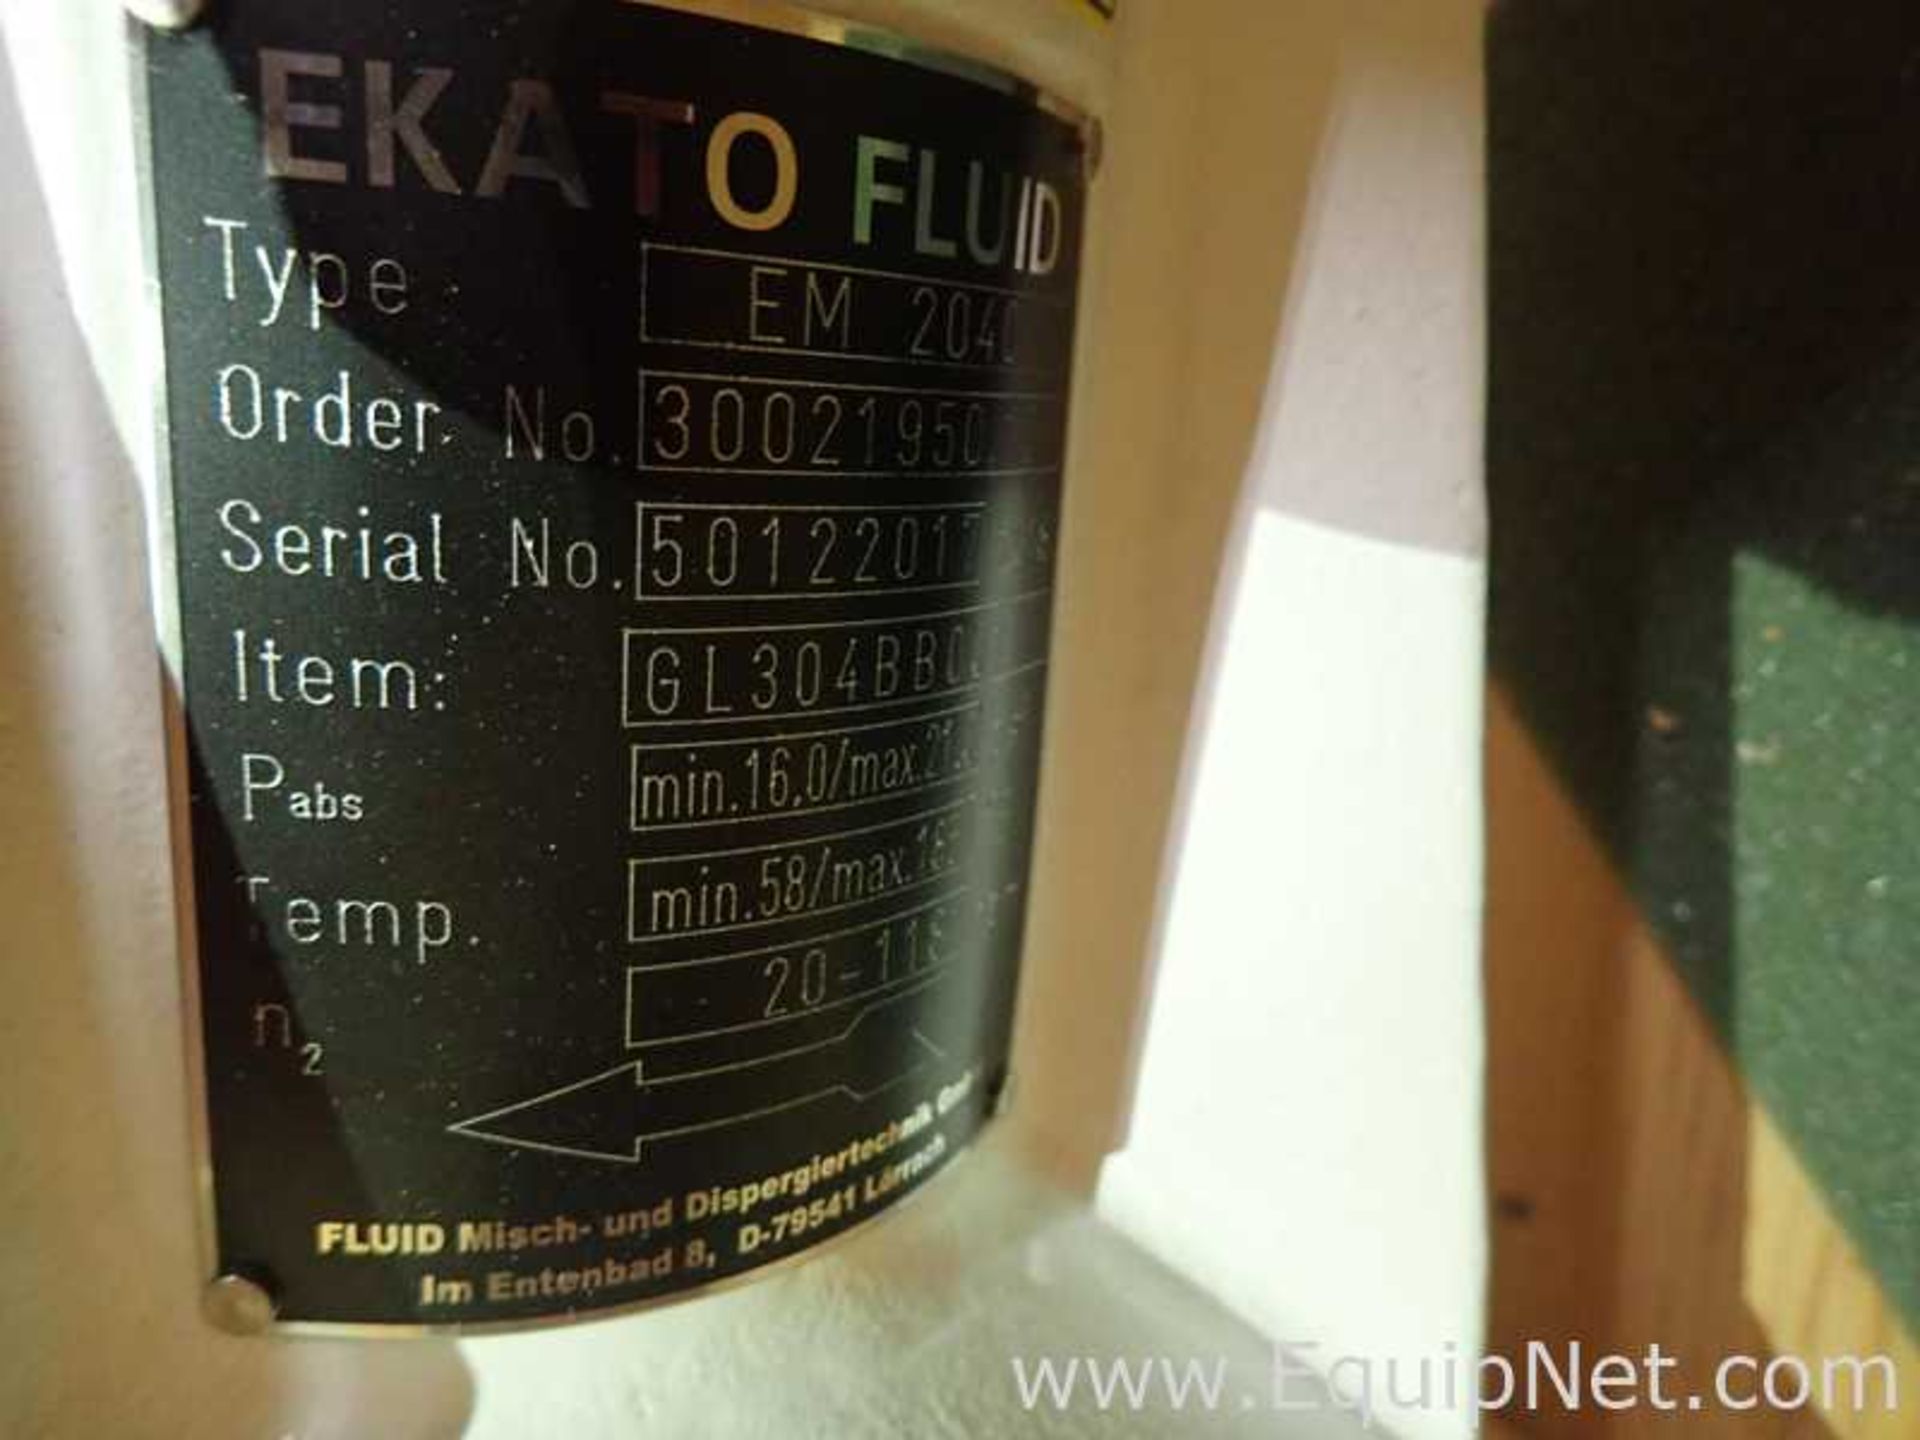 Unused Ekato Fluid EM 2040 Industrial Agitator with Dual Blade Shaft - Image 8 of 8